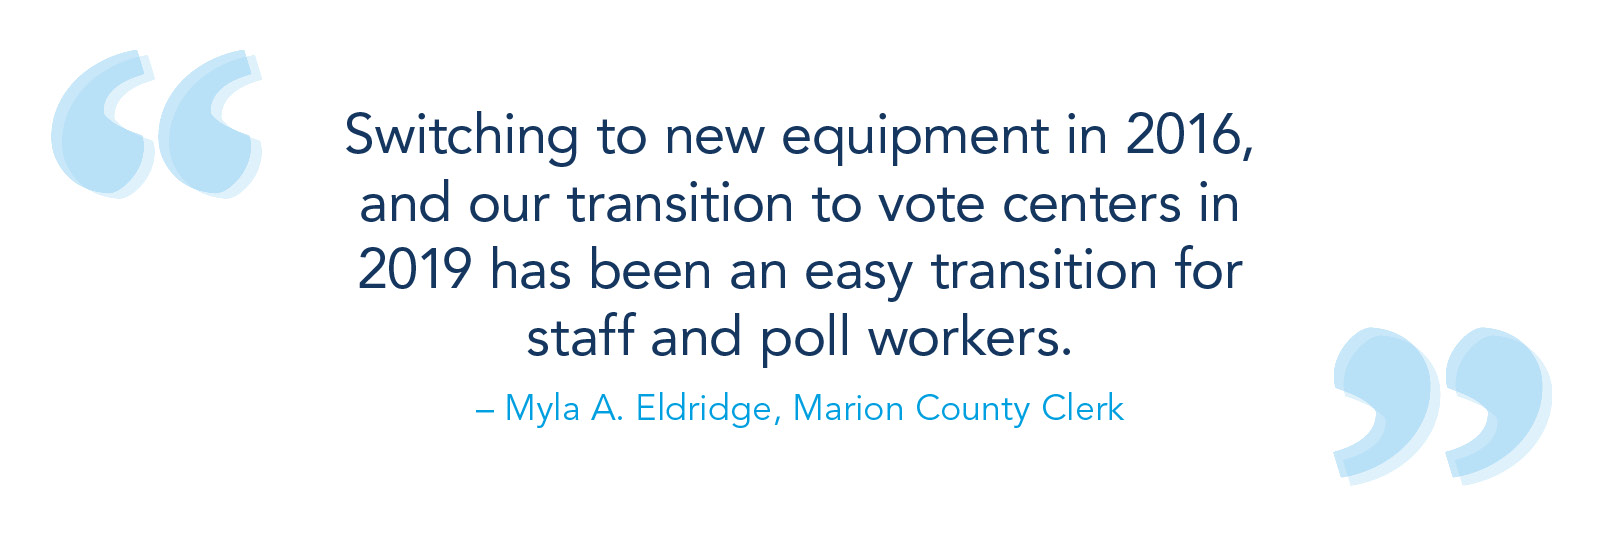 2016年转向新设备，以及我们2019年投票中心的过渡一直是对员工和民意调查工人的轻松过渡。-  Myla A. Eldridge，Marion County Clerk